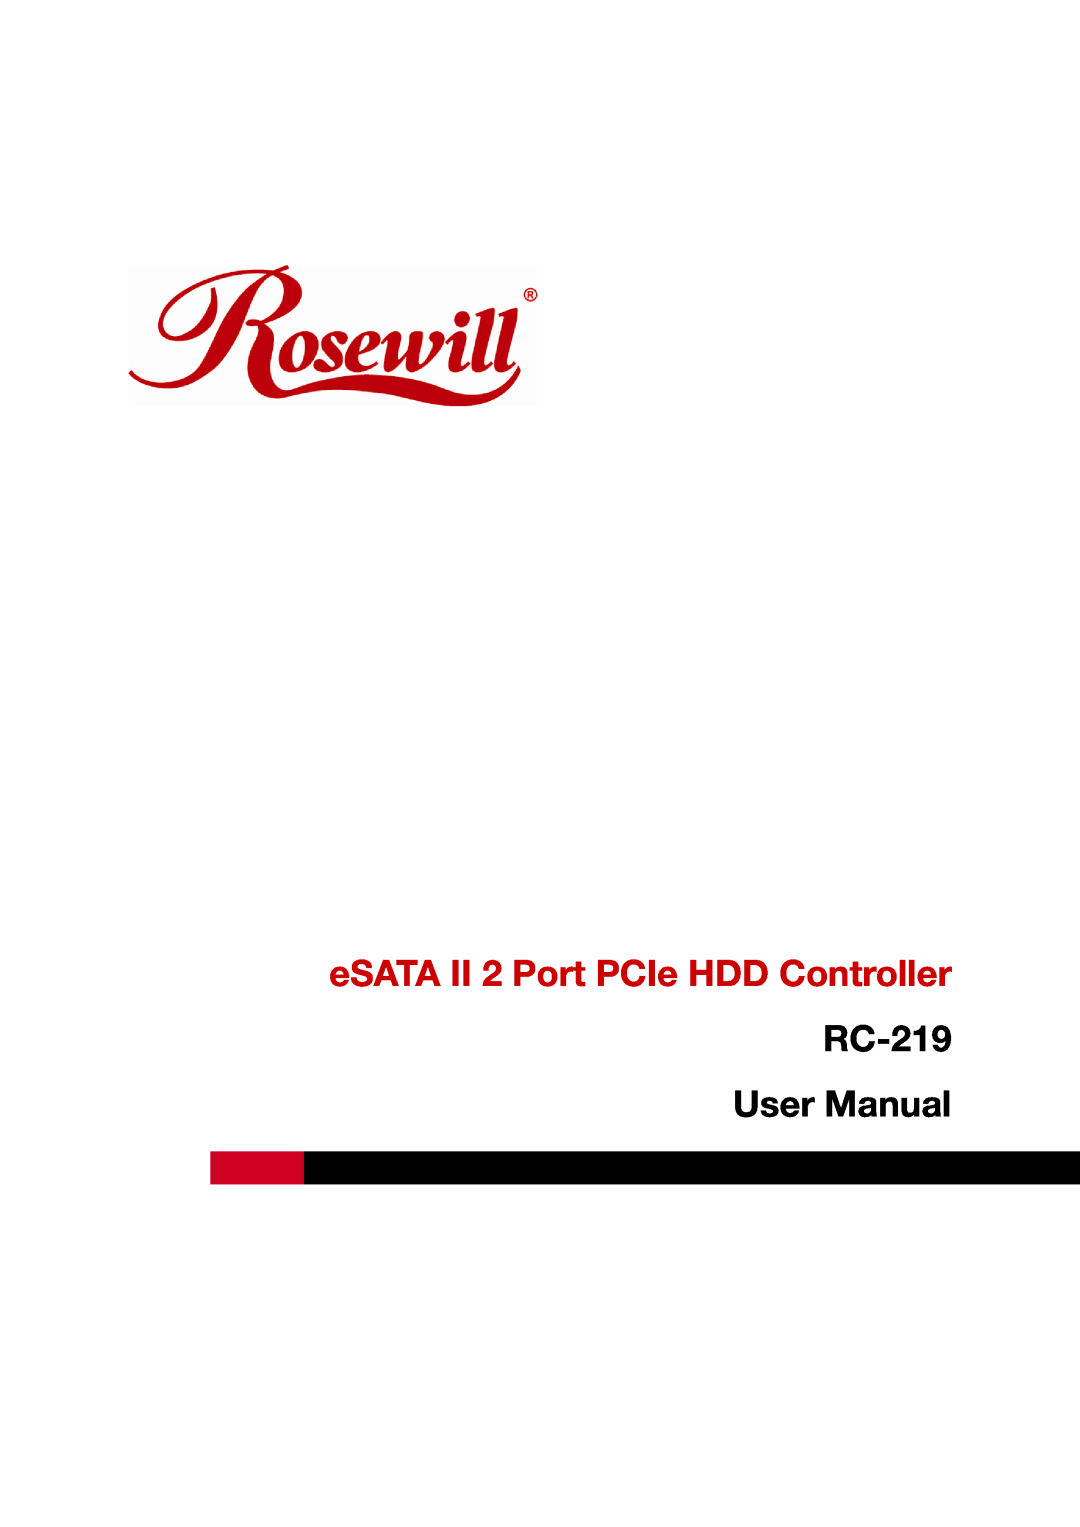 Rosewill user manual eSATA II 2 Port PCIe HDD Controller, RC-219 User Manual 